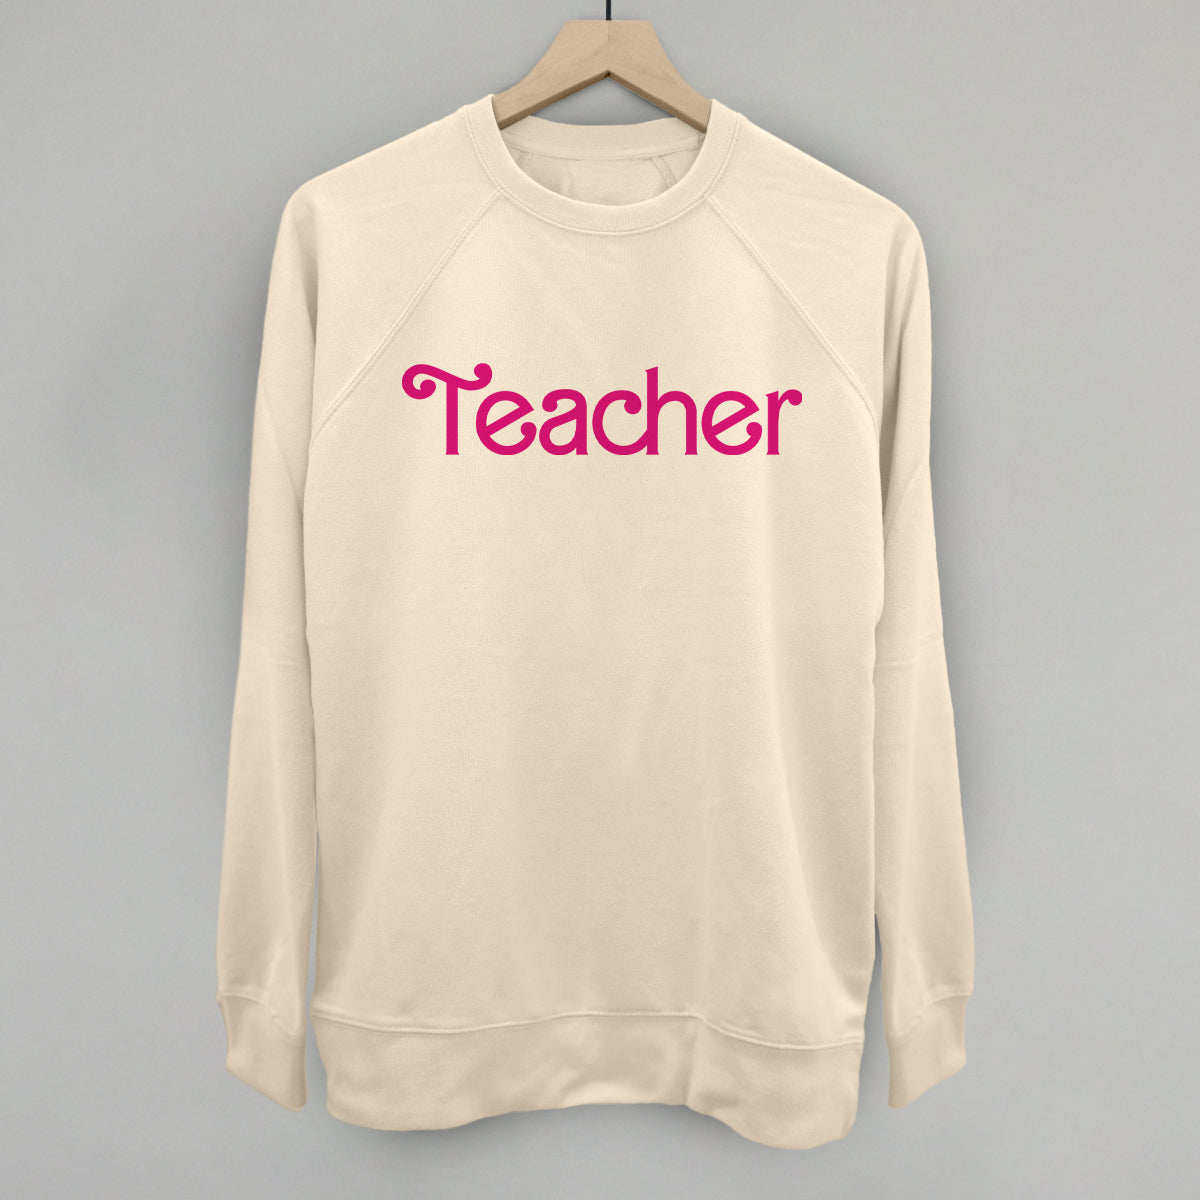 Teacher Hot Pink